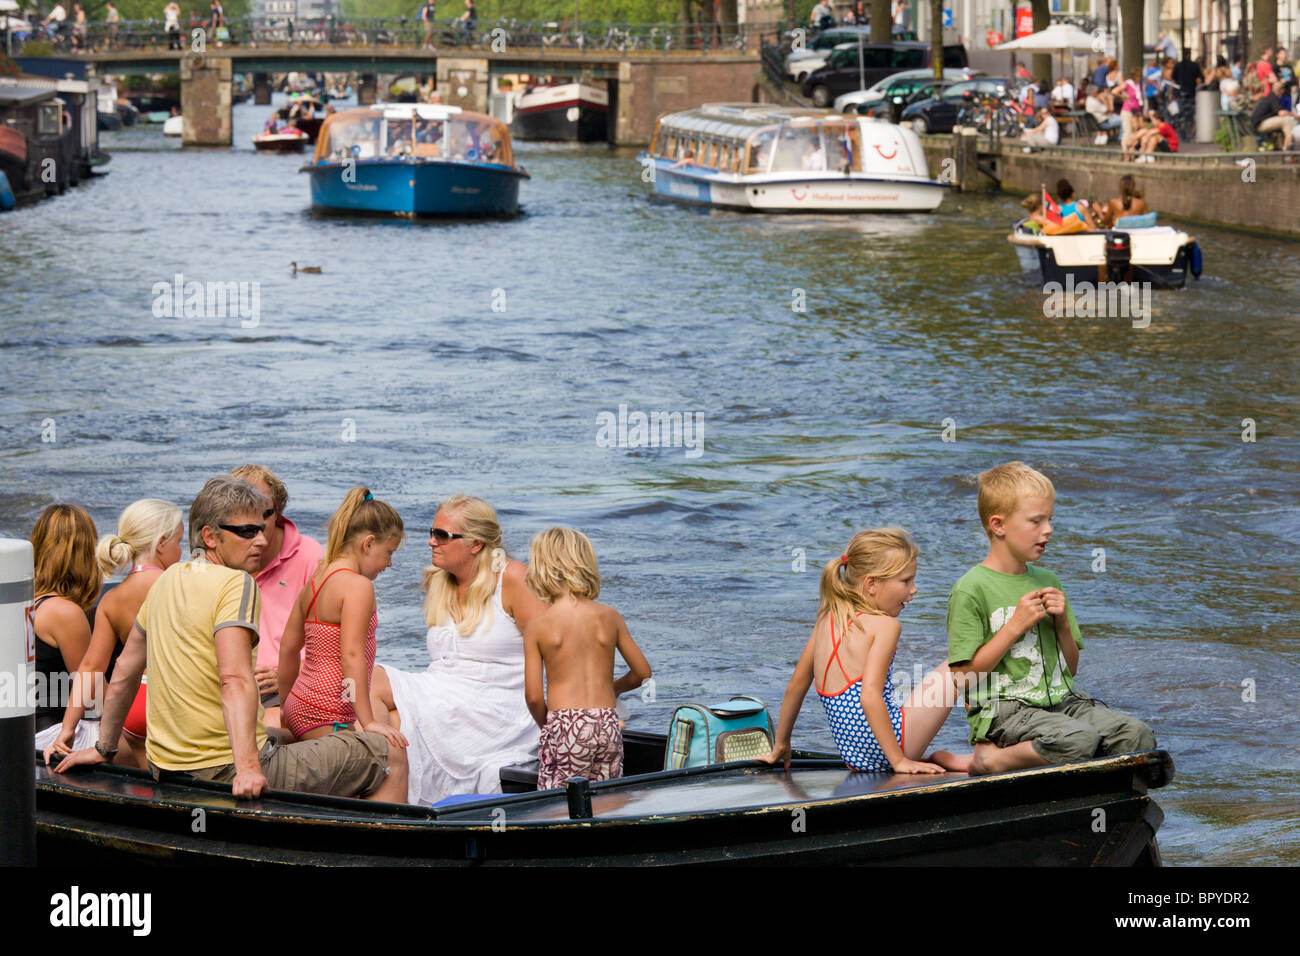 Amsterdam, Bootfahren. Familie mit Kindern in kleinen offenen Boot am Prinsengracht Kanal, mit Tour Kanalboote im Hintergrund. Stockfoto